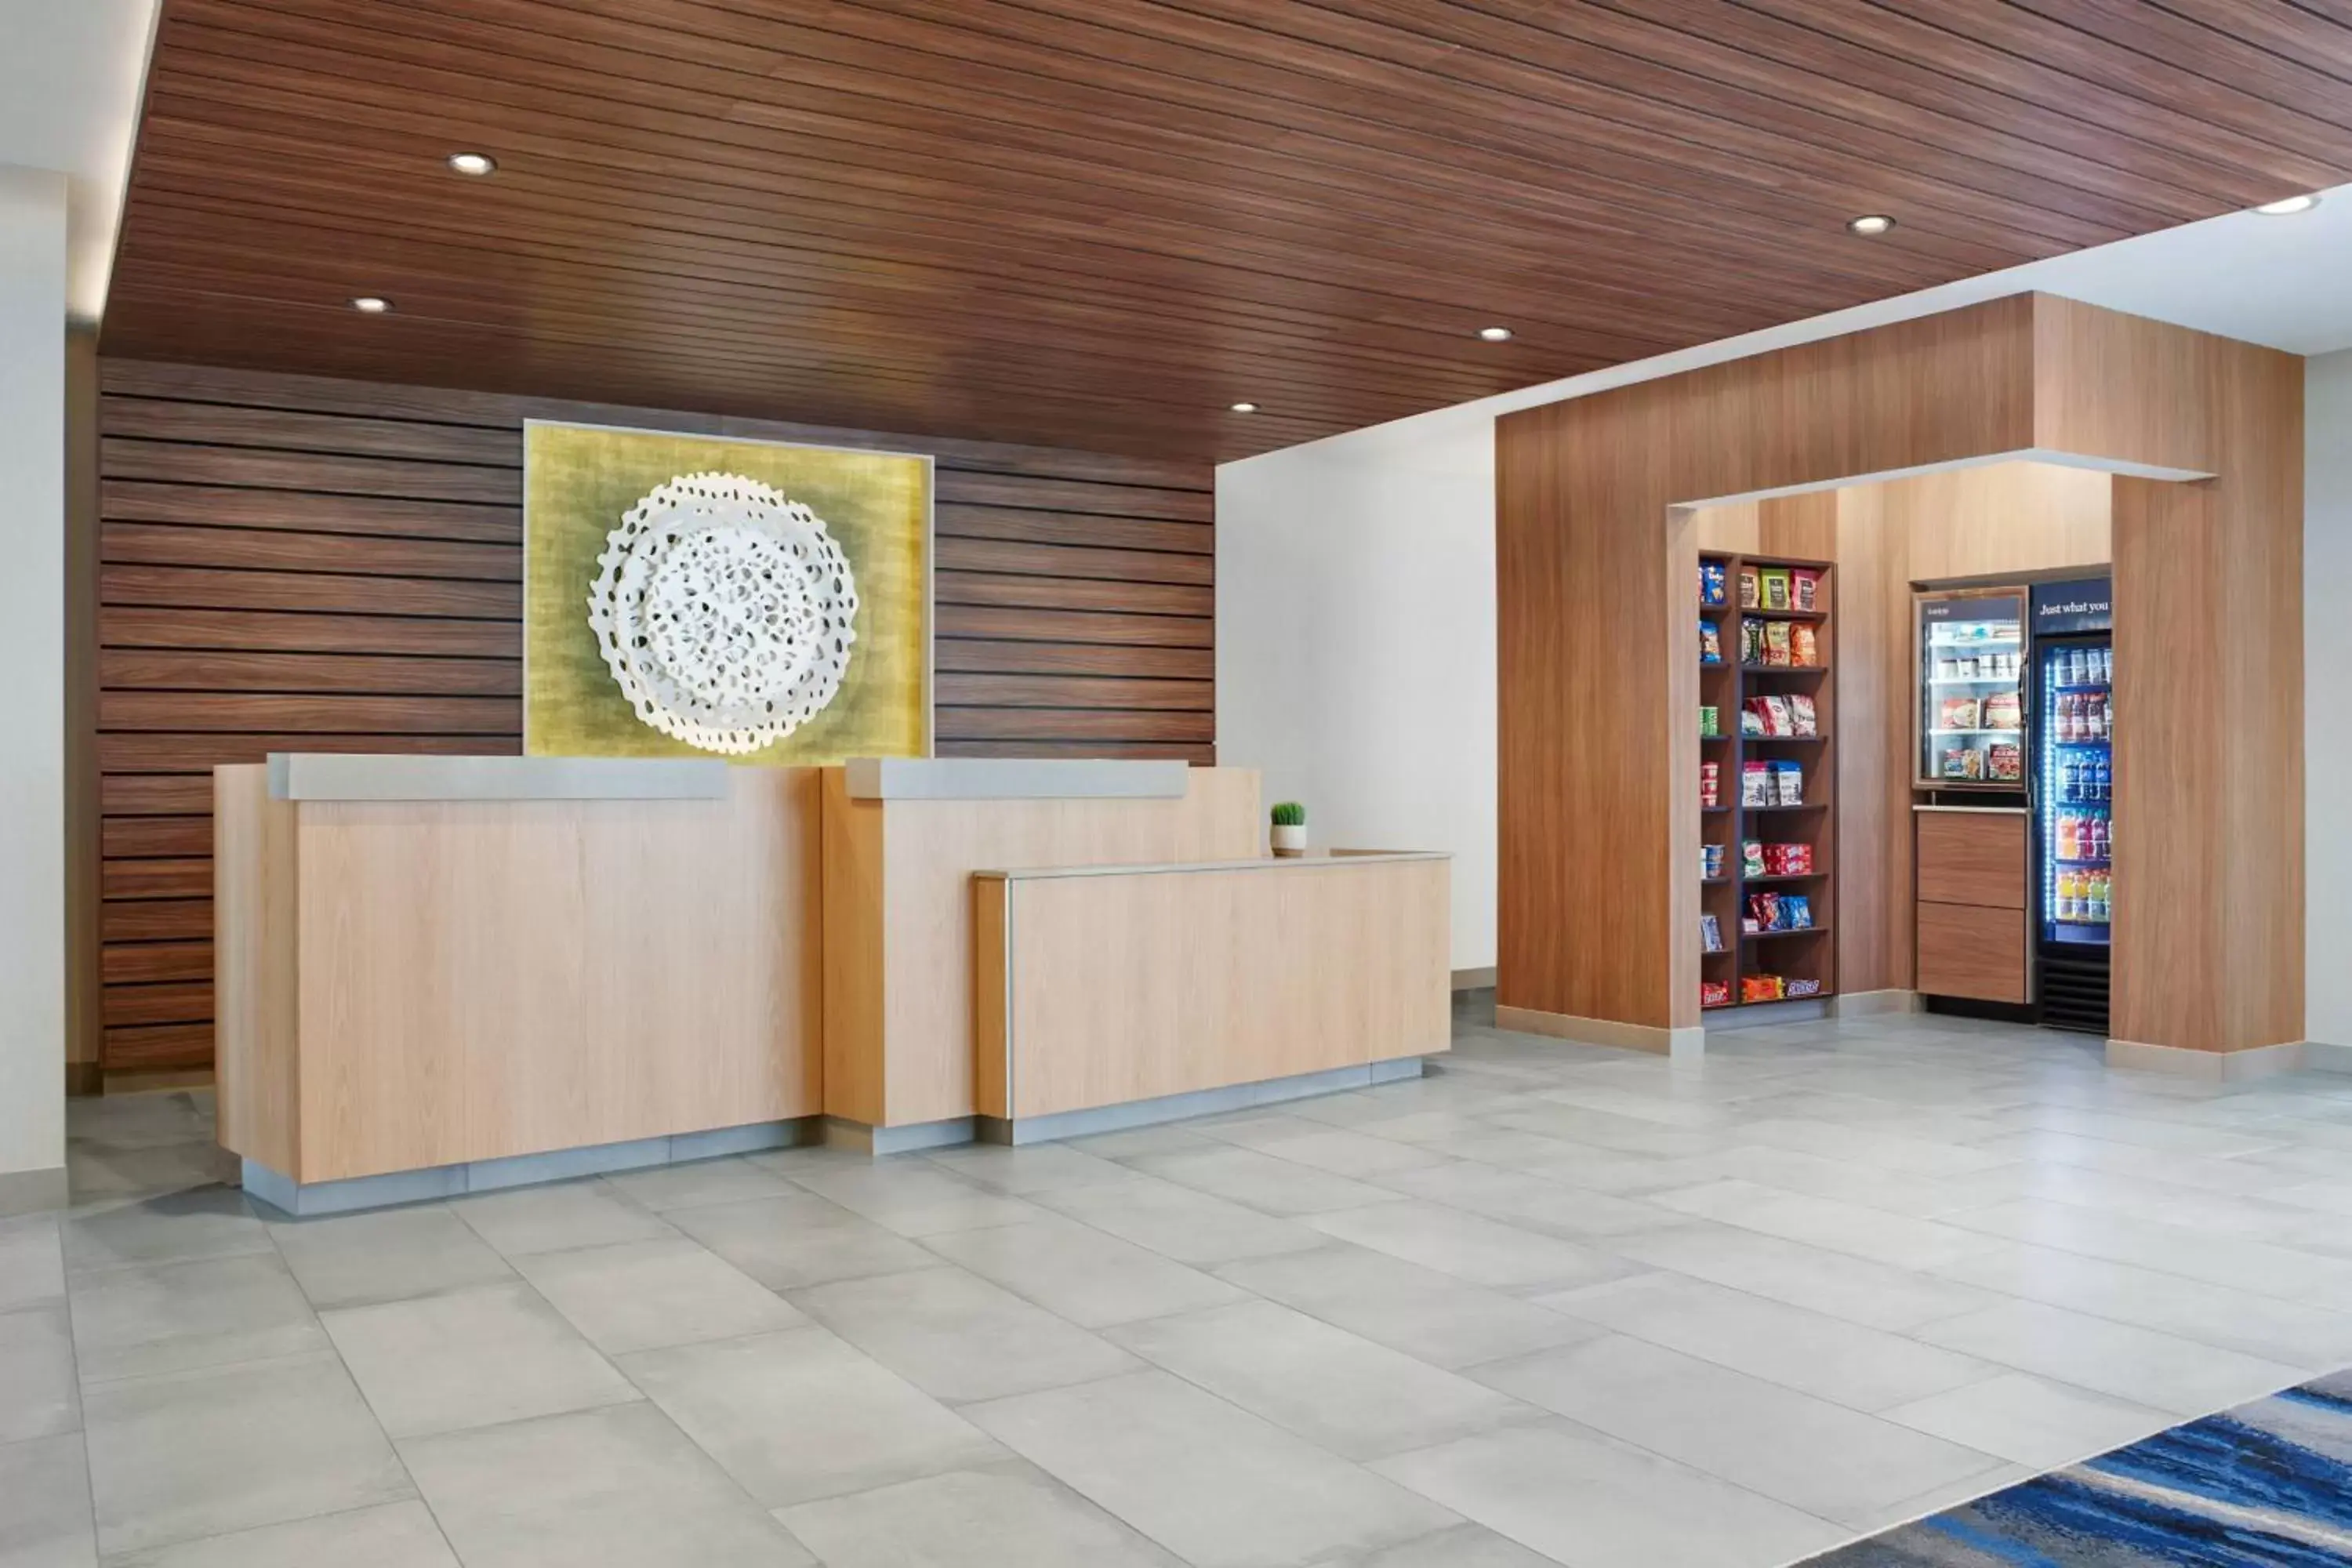 Lobby or reception, Lobby/Reception in Fairfield by Marriott Inn & Suites Ashtabula